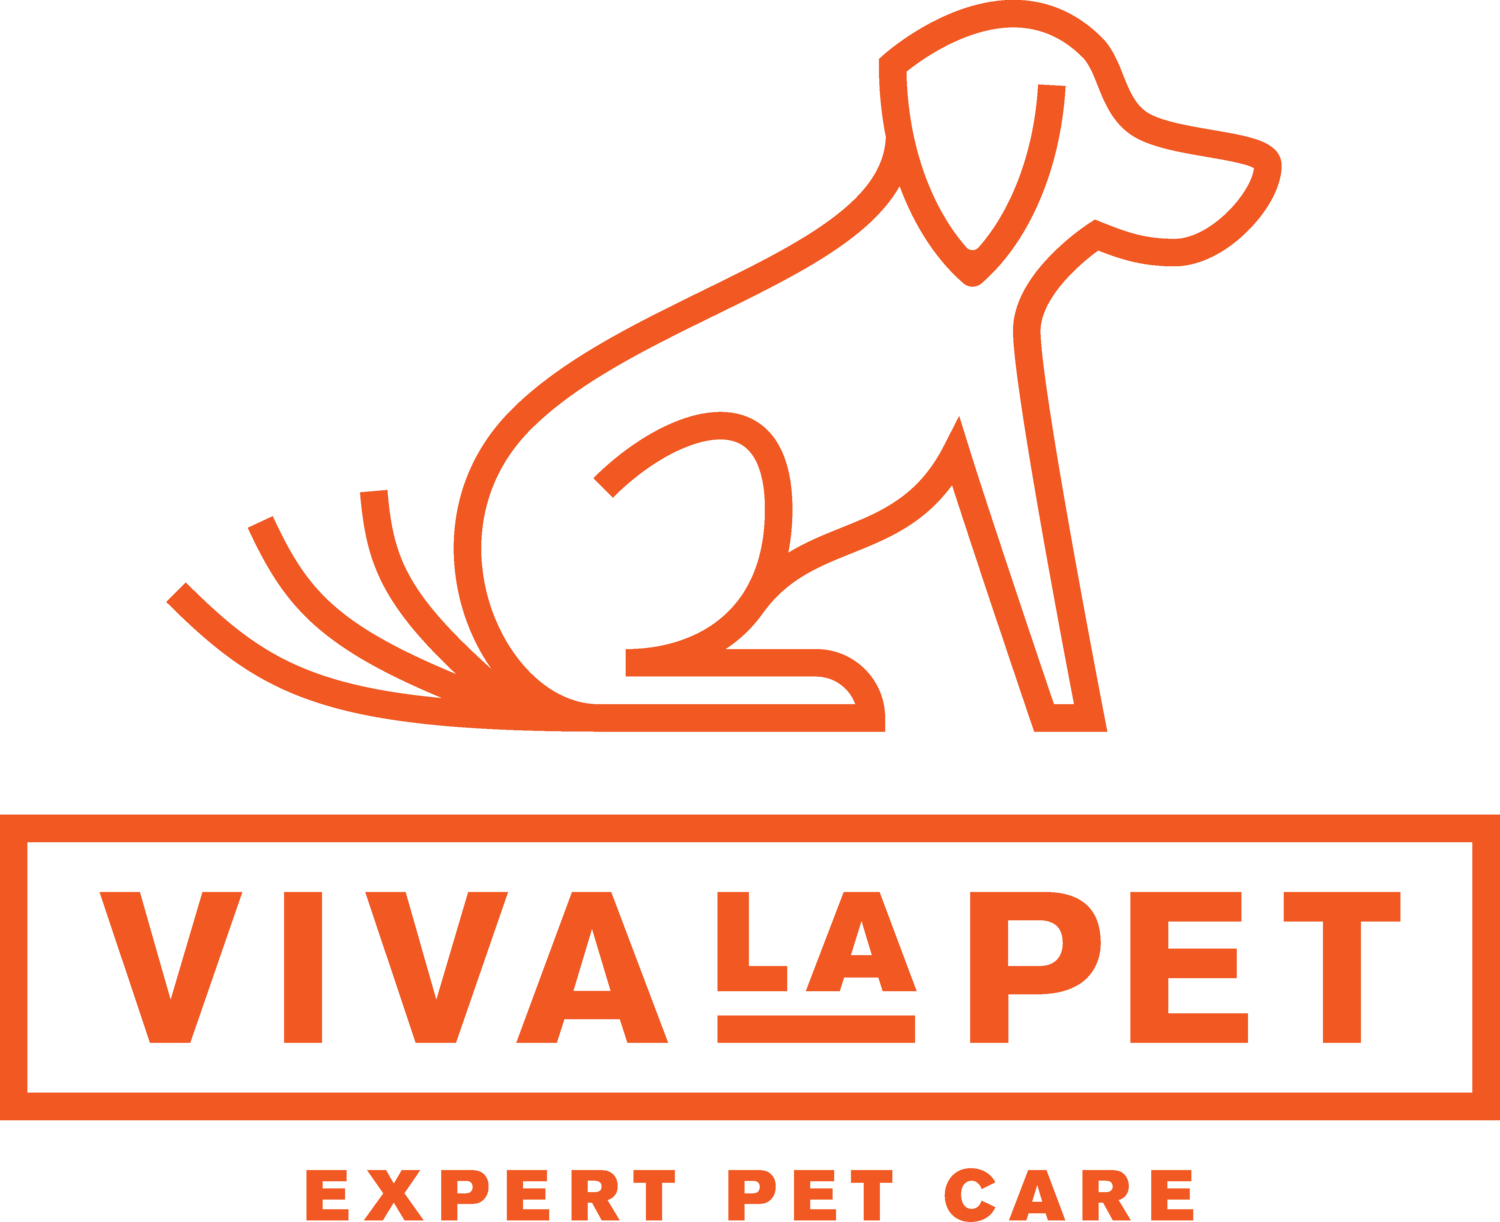 www.vivalapet.net